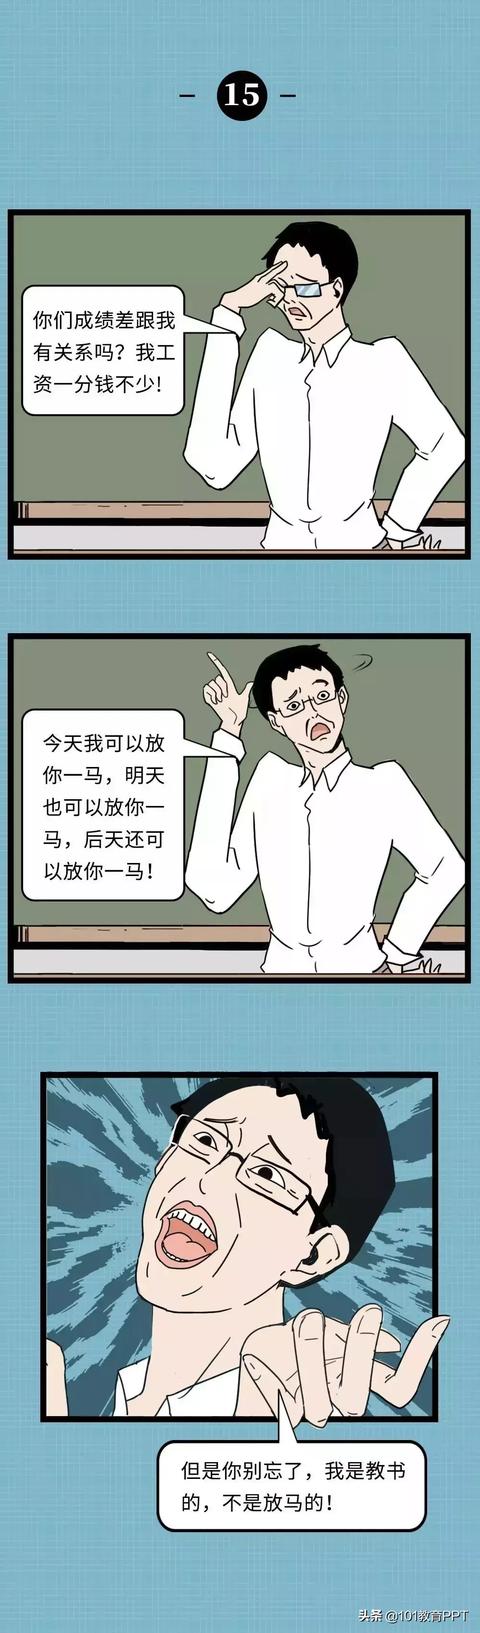 2019老师“鬼话”图鉴大全